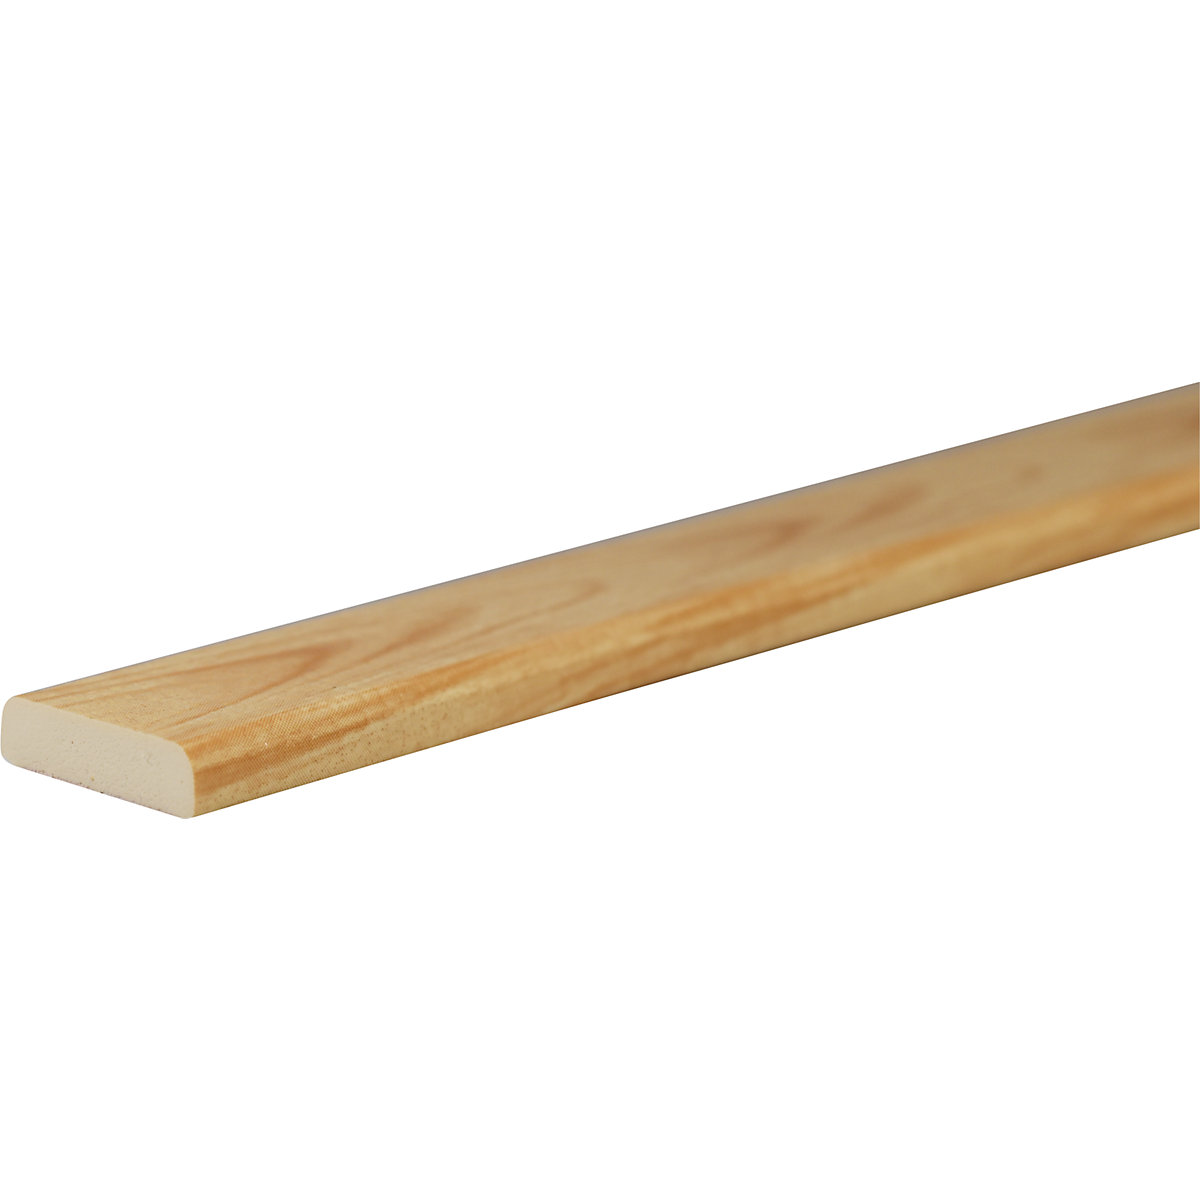 Protection des surfaces Knuffi® – SHG, type F, pièce de 1 m, façon bois naturel